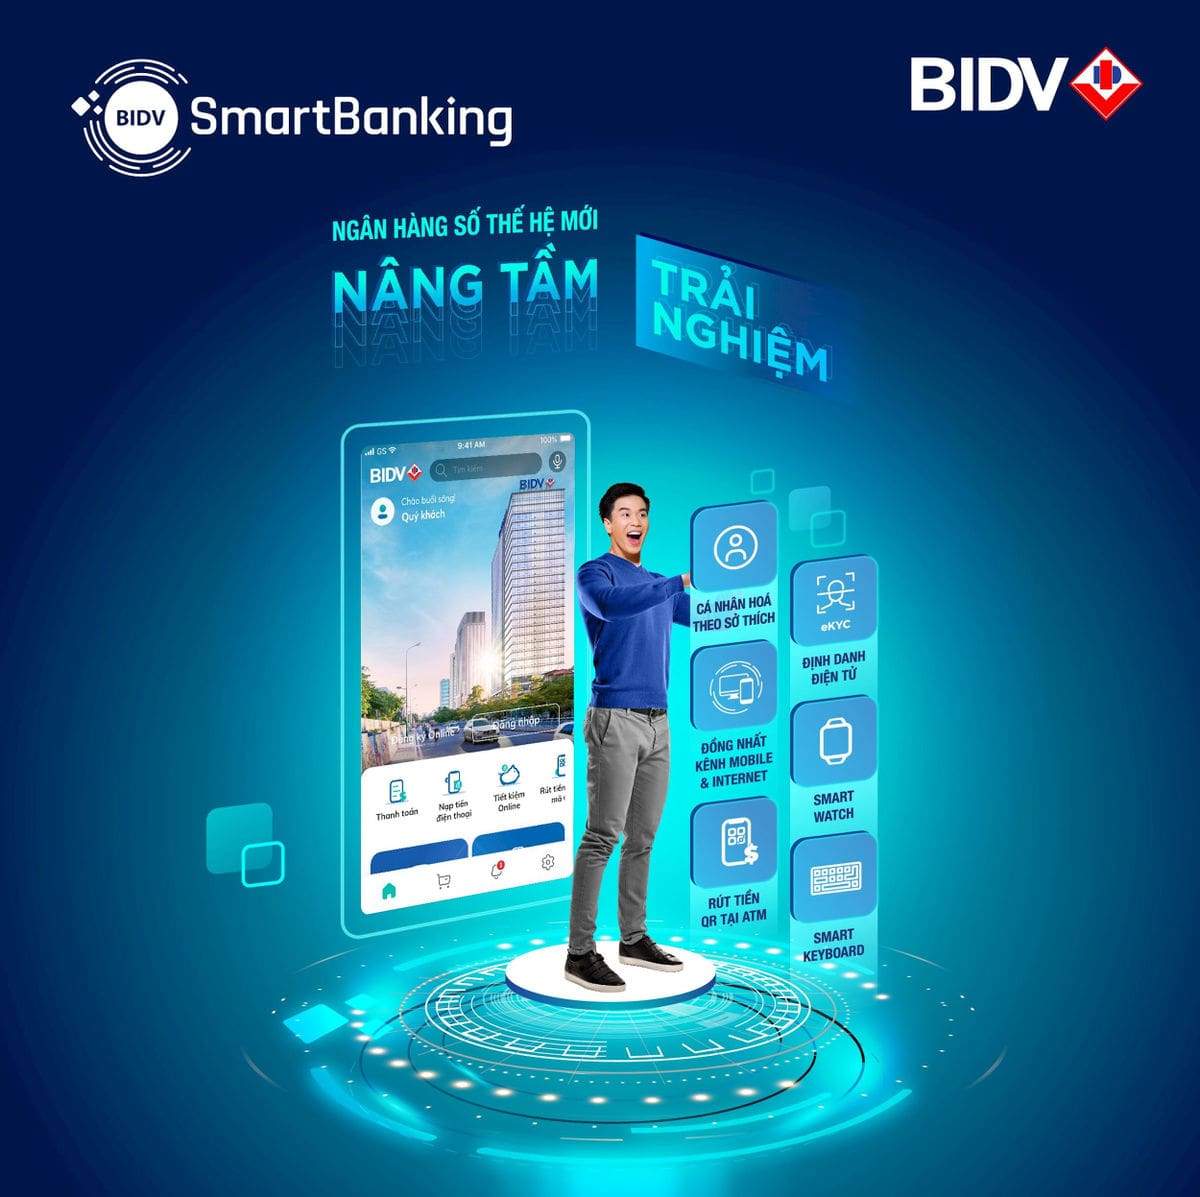 Trải nghiệm hiện đại với BIDV Smart Banking